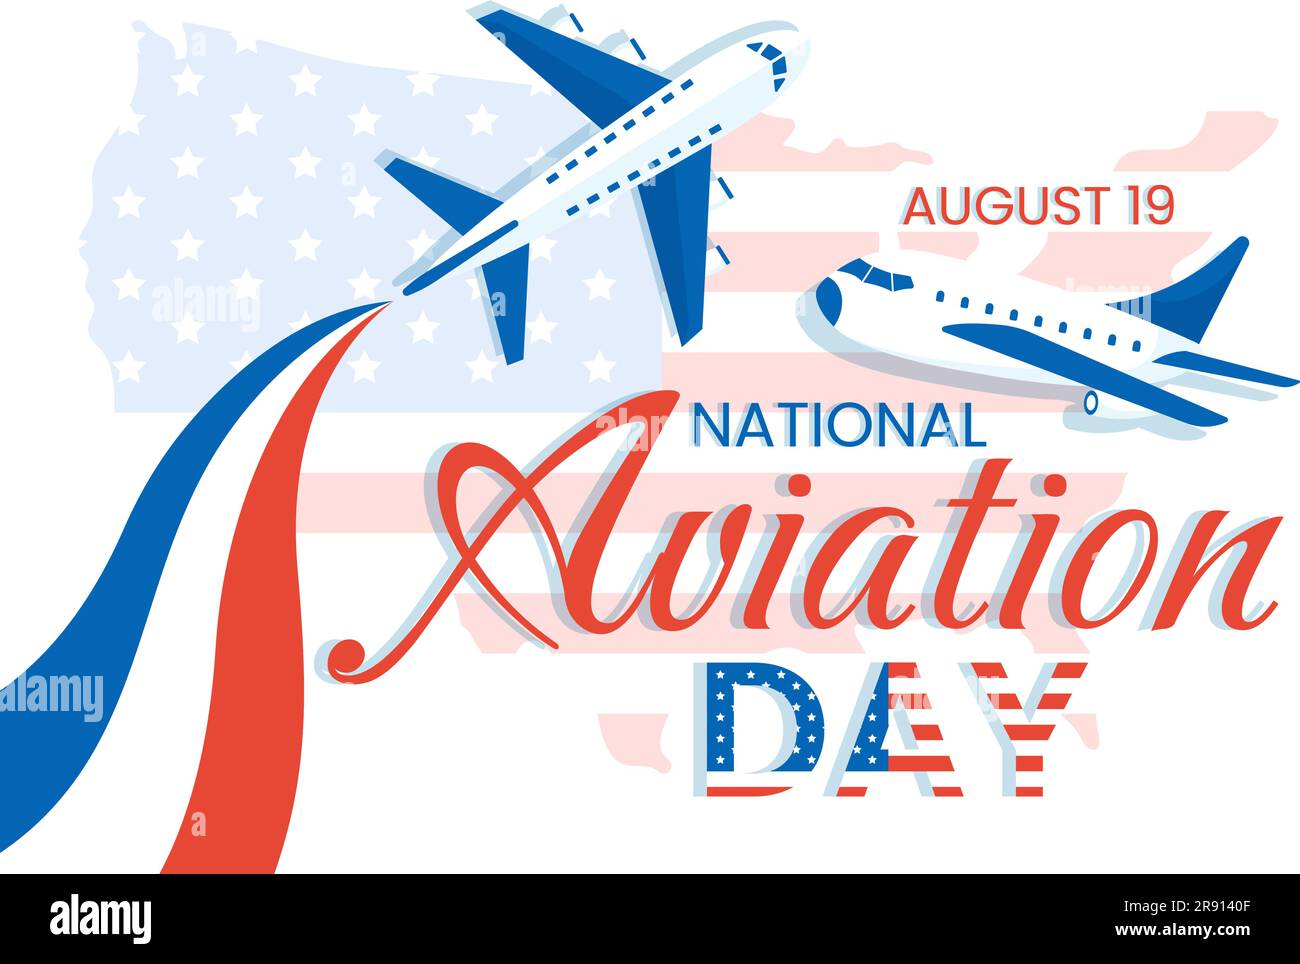 National Aviation Day Vector Illustration eines Flugzeugs mit himmelblauem Hintergrund oder Flagge der Vereinigten Staaten in flachen, handgezogenen Cartoon-Vorlagen Stock Vektor